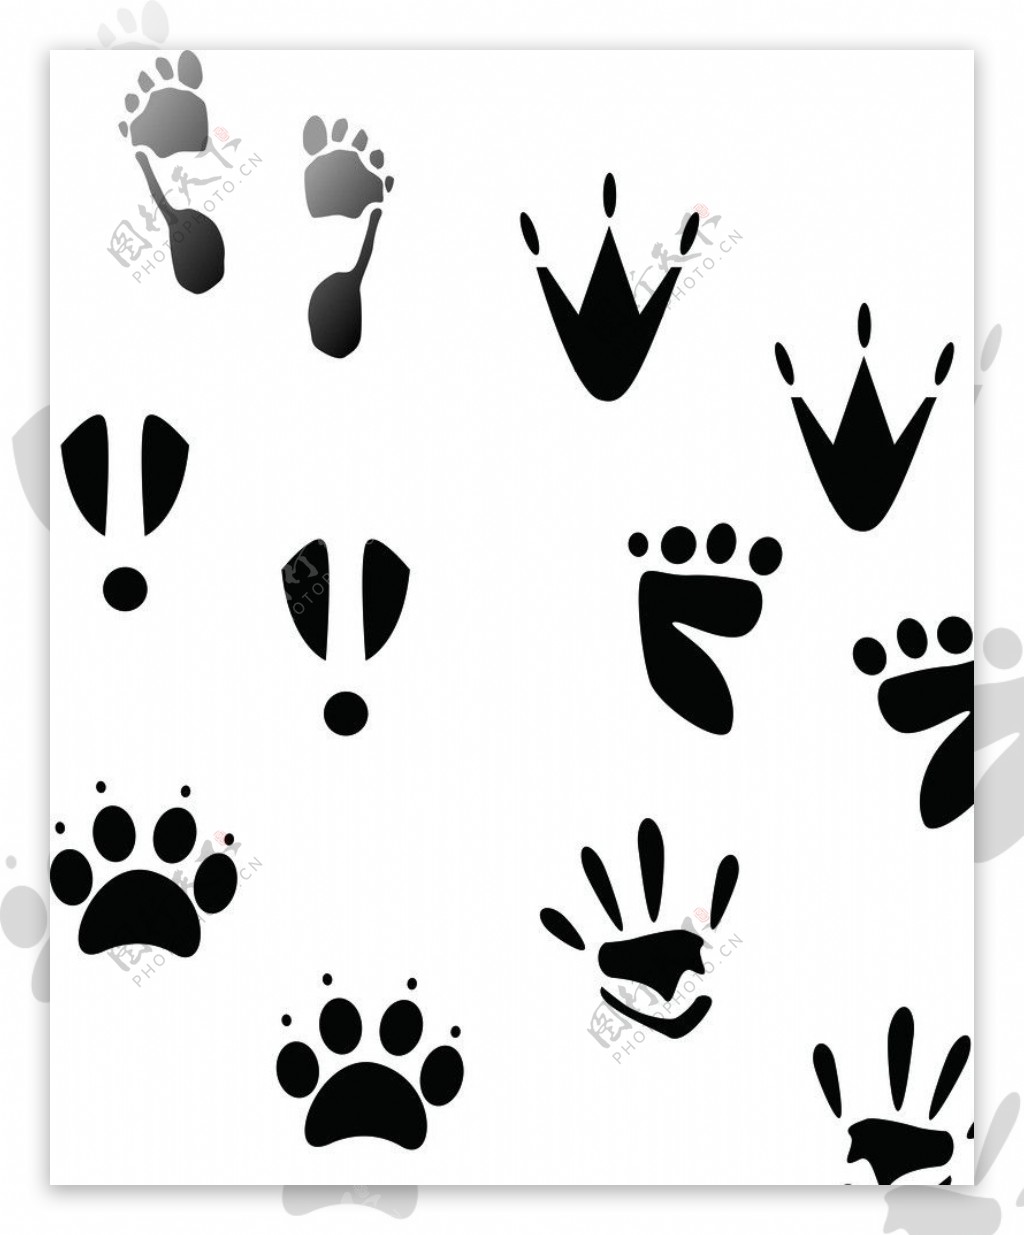 动物脚印素材-动物脚印图片-动物脚印素材图片下载-觅知网